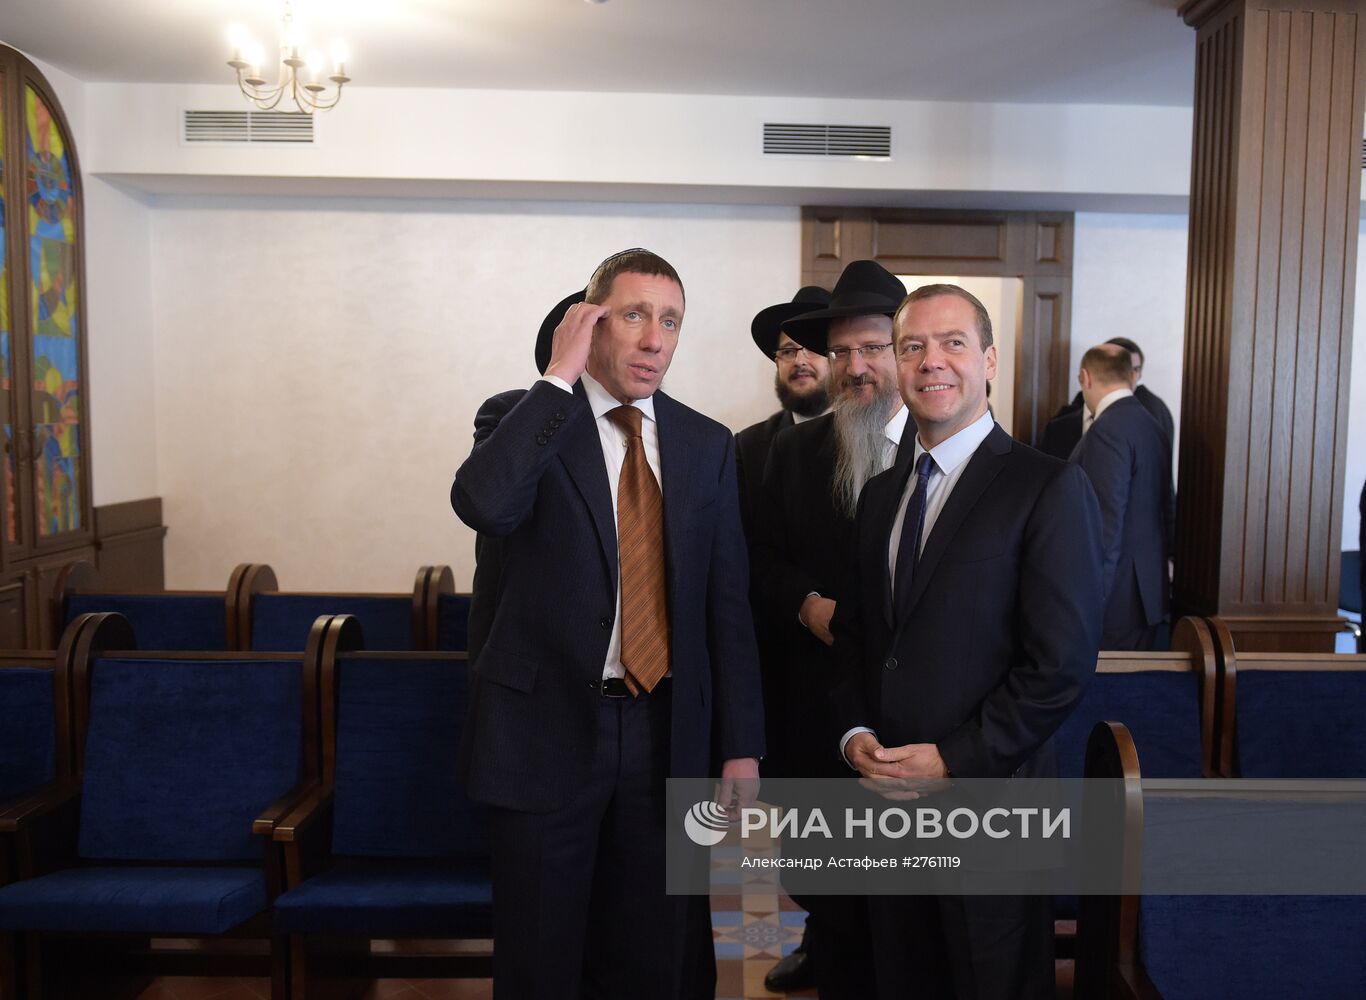 Рабочая поездка премьер-министра РФ Д.Медведева в Дальневосточный федеральный округ